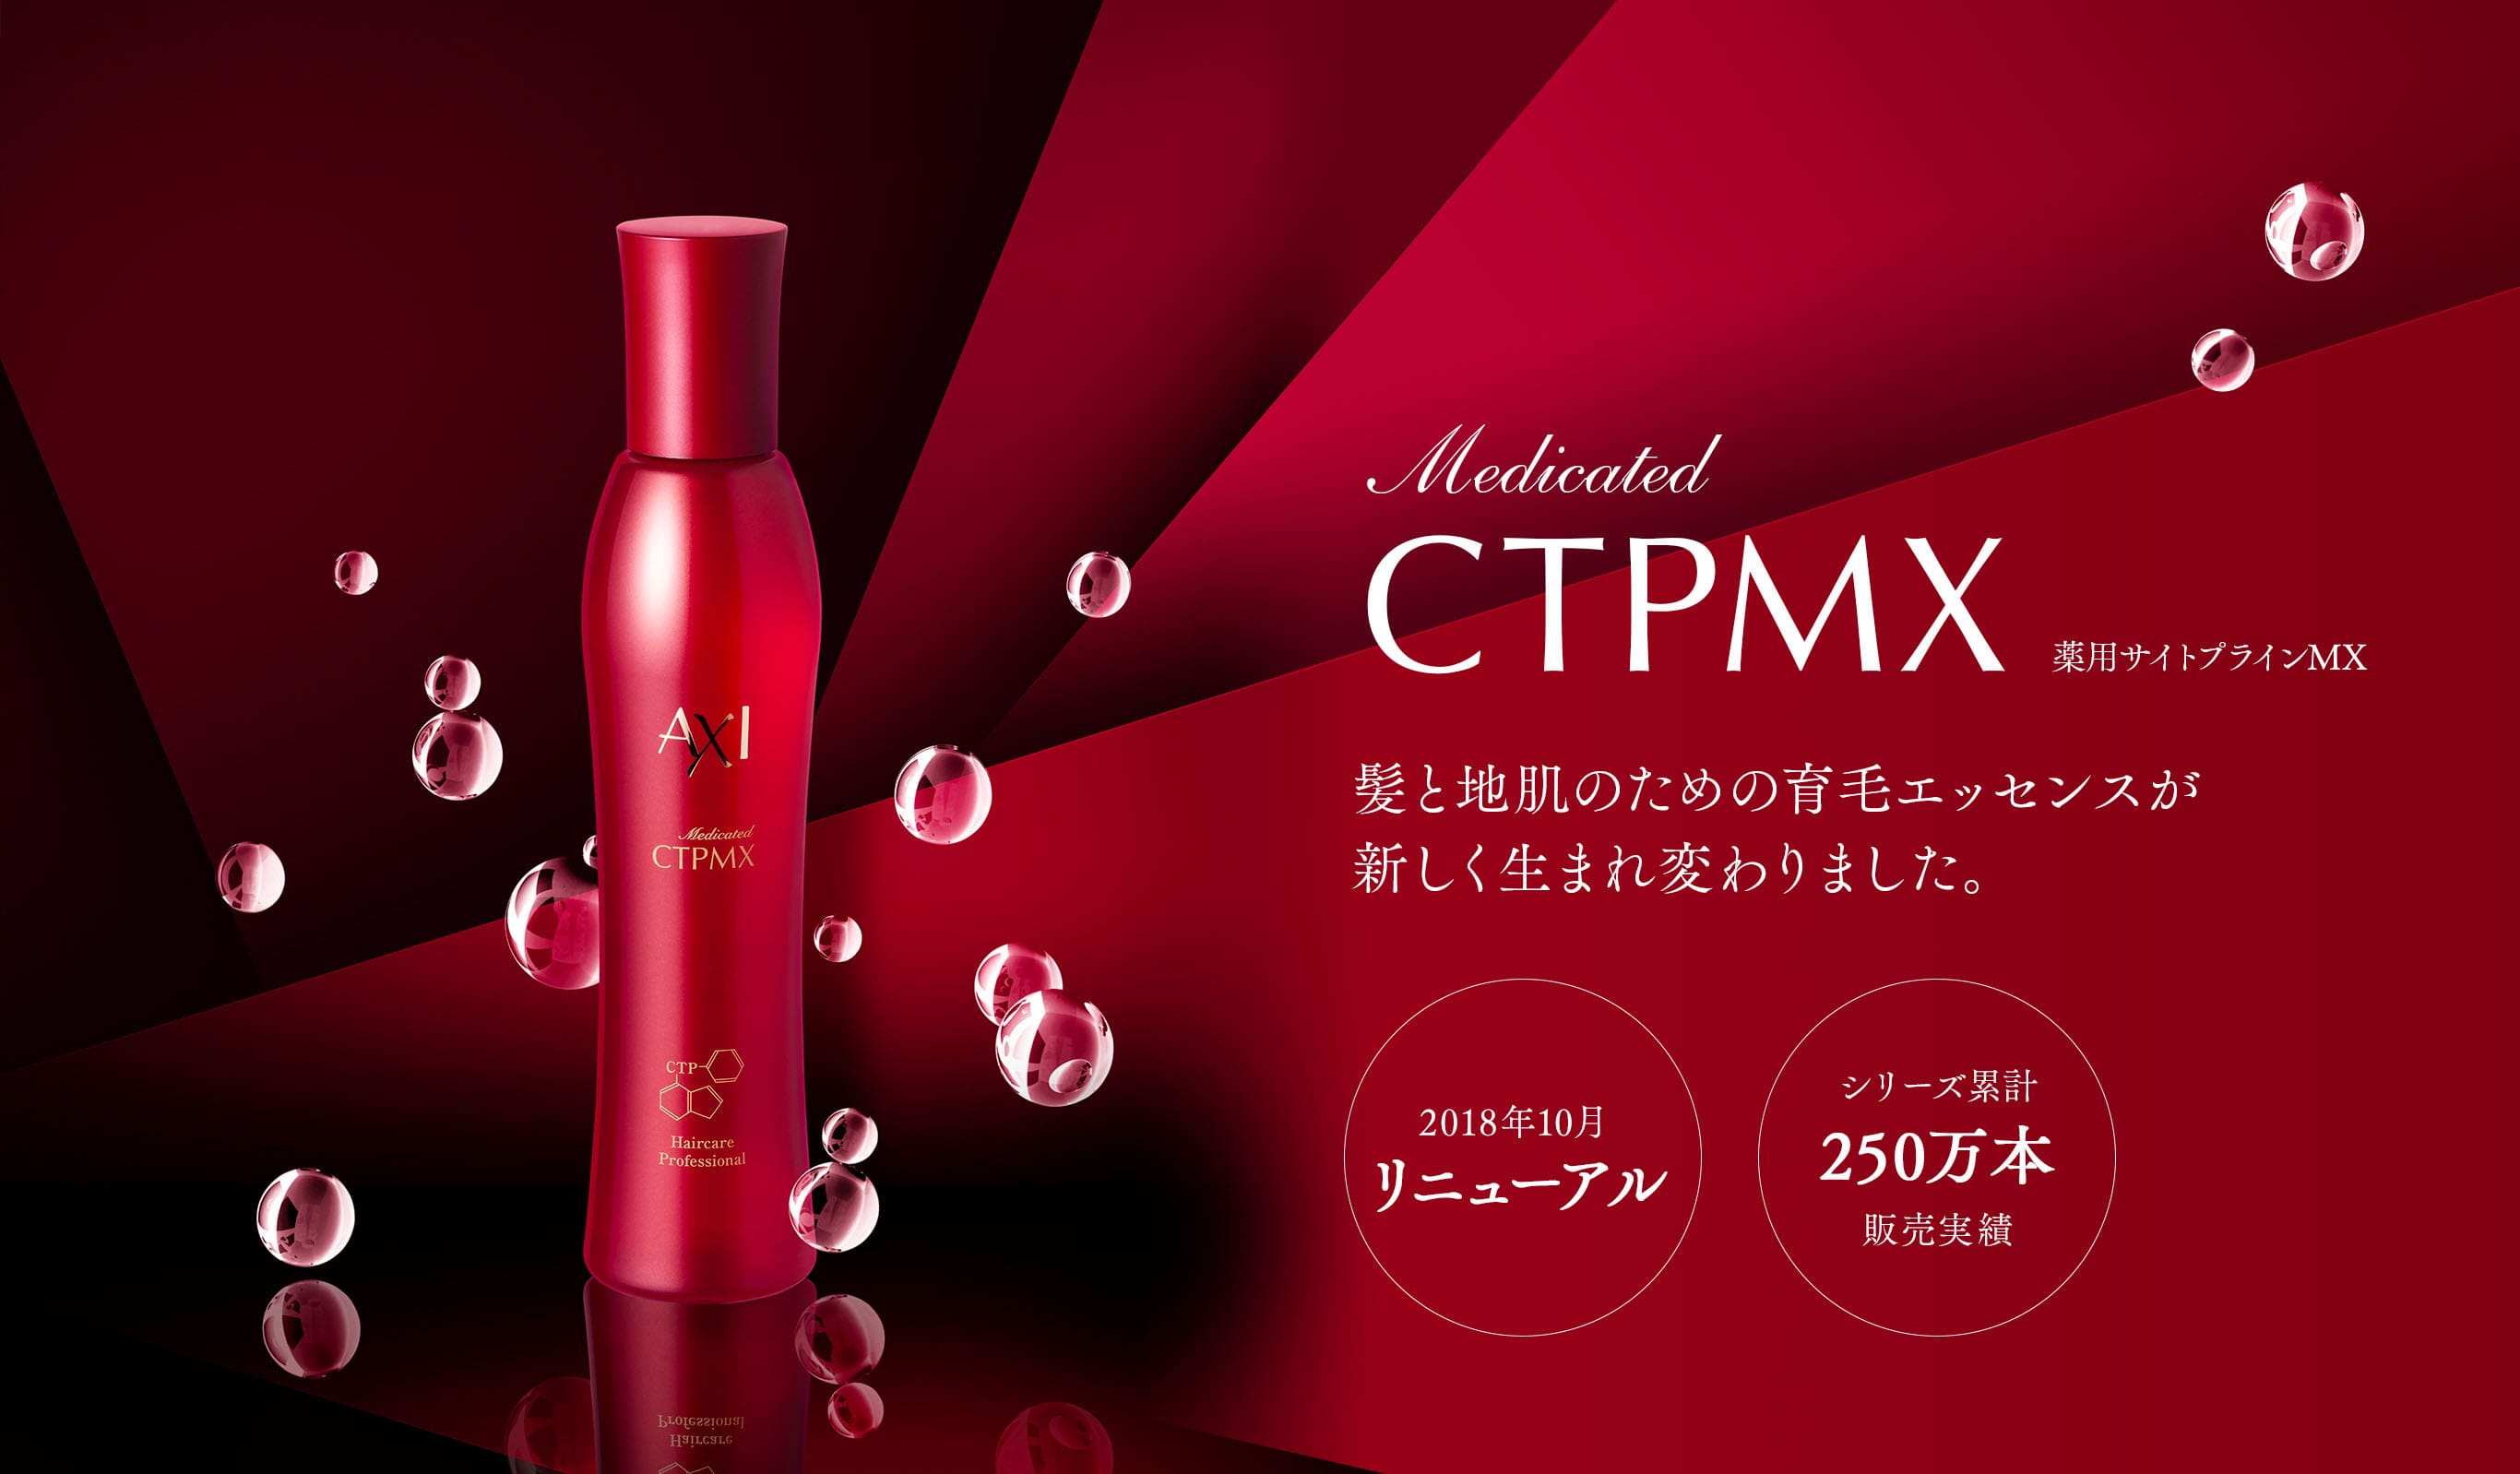 Medicated CTPMX 薬用サイトプラインMX 髪と地肌のための育⽑エッセンスが新しく⽣まれ変わりました。